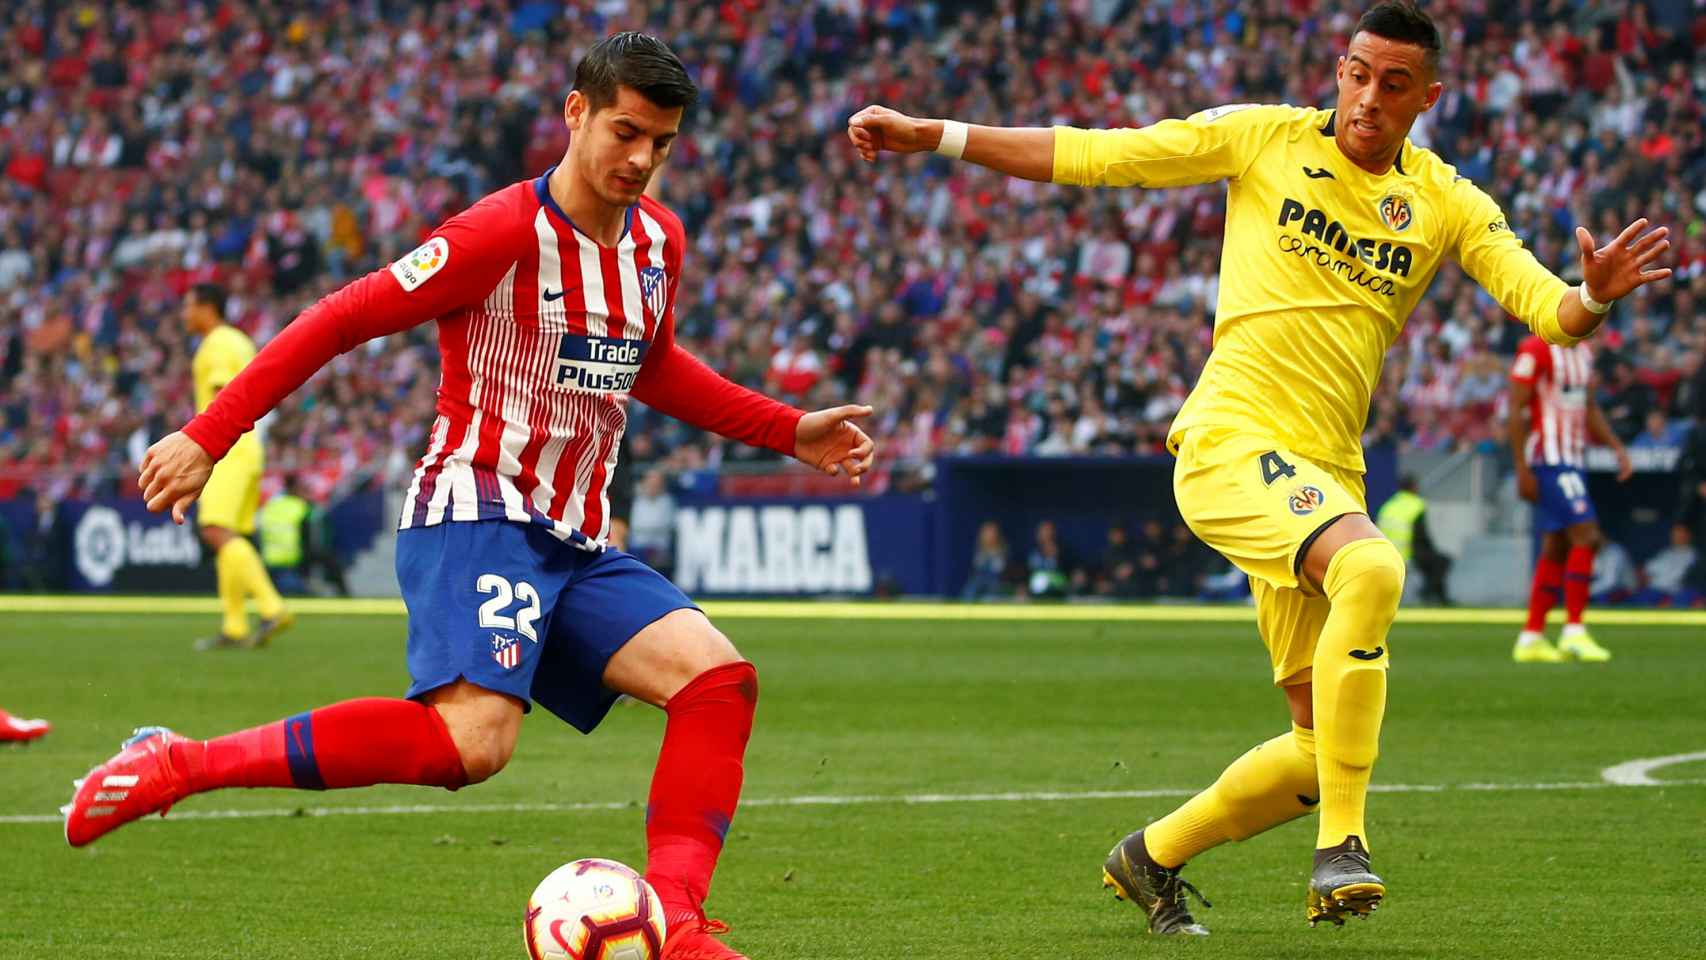 Morata dispara a puerta en el Atlético - Villarreal